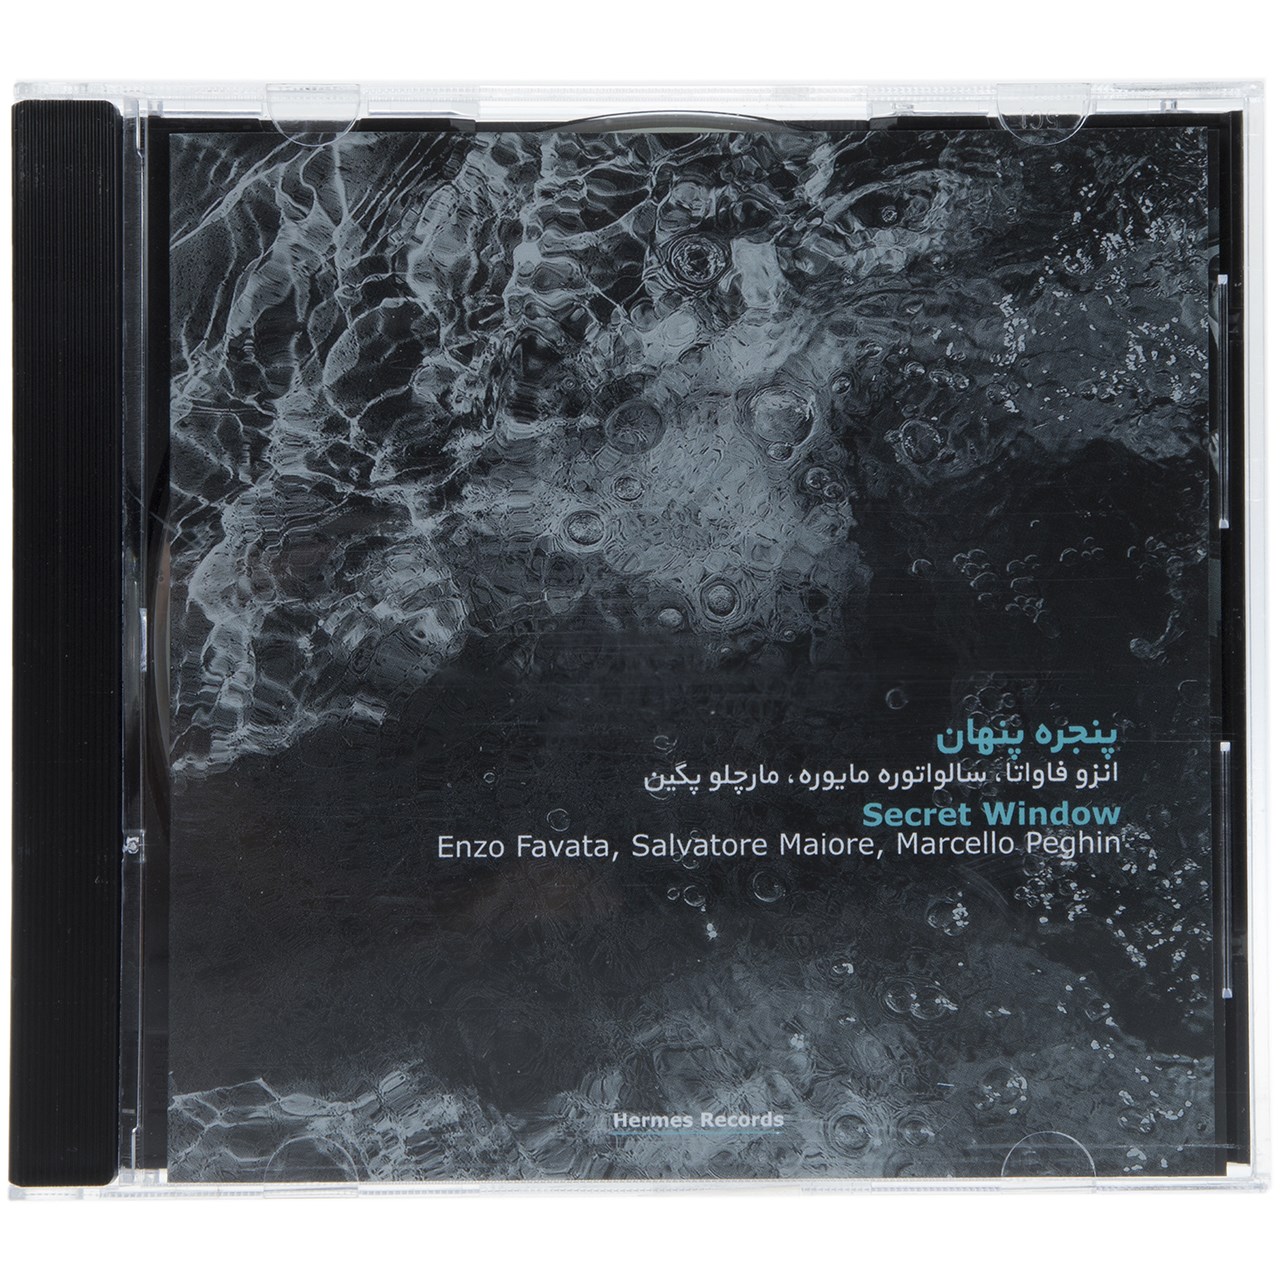 آلبوم موسیقی پنجره پنهان اثر انزو فاواتا